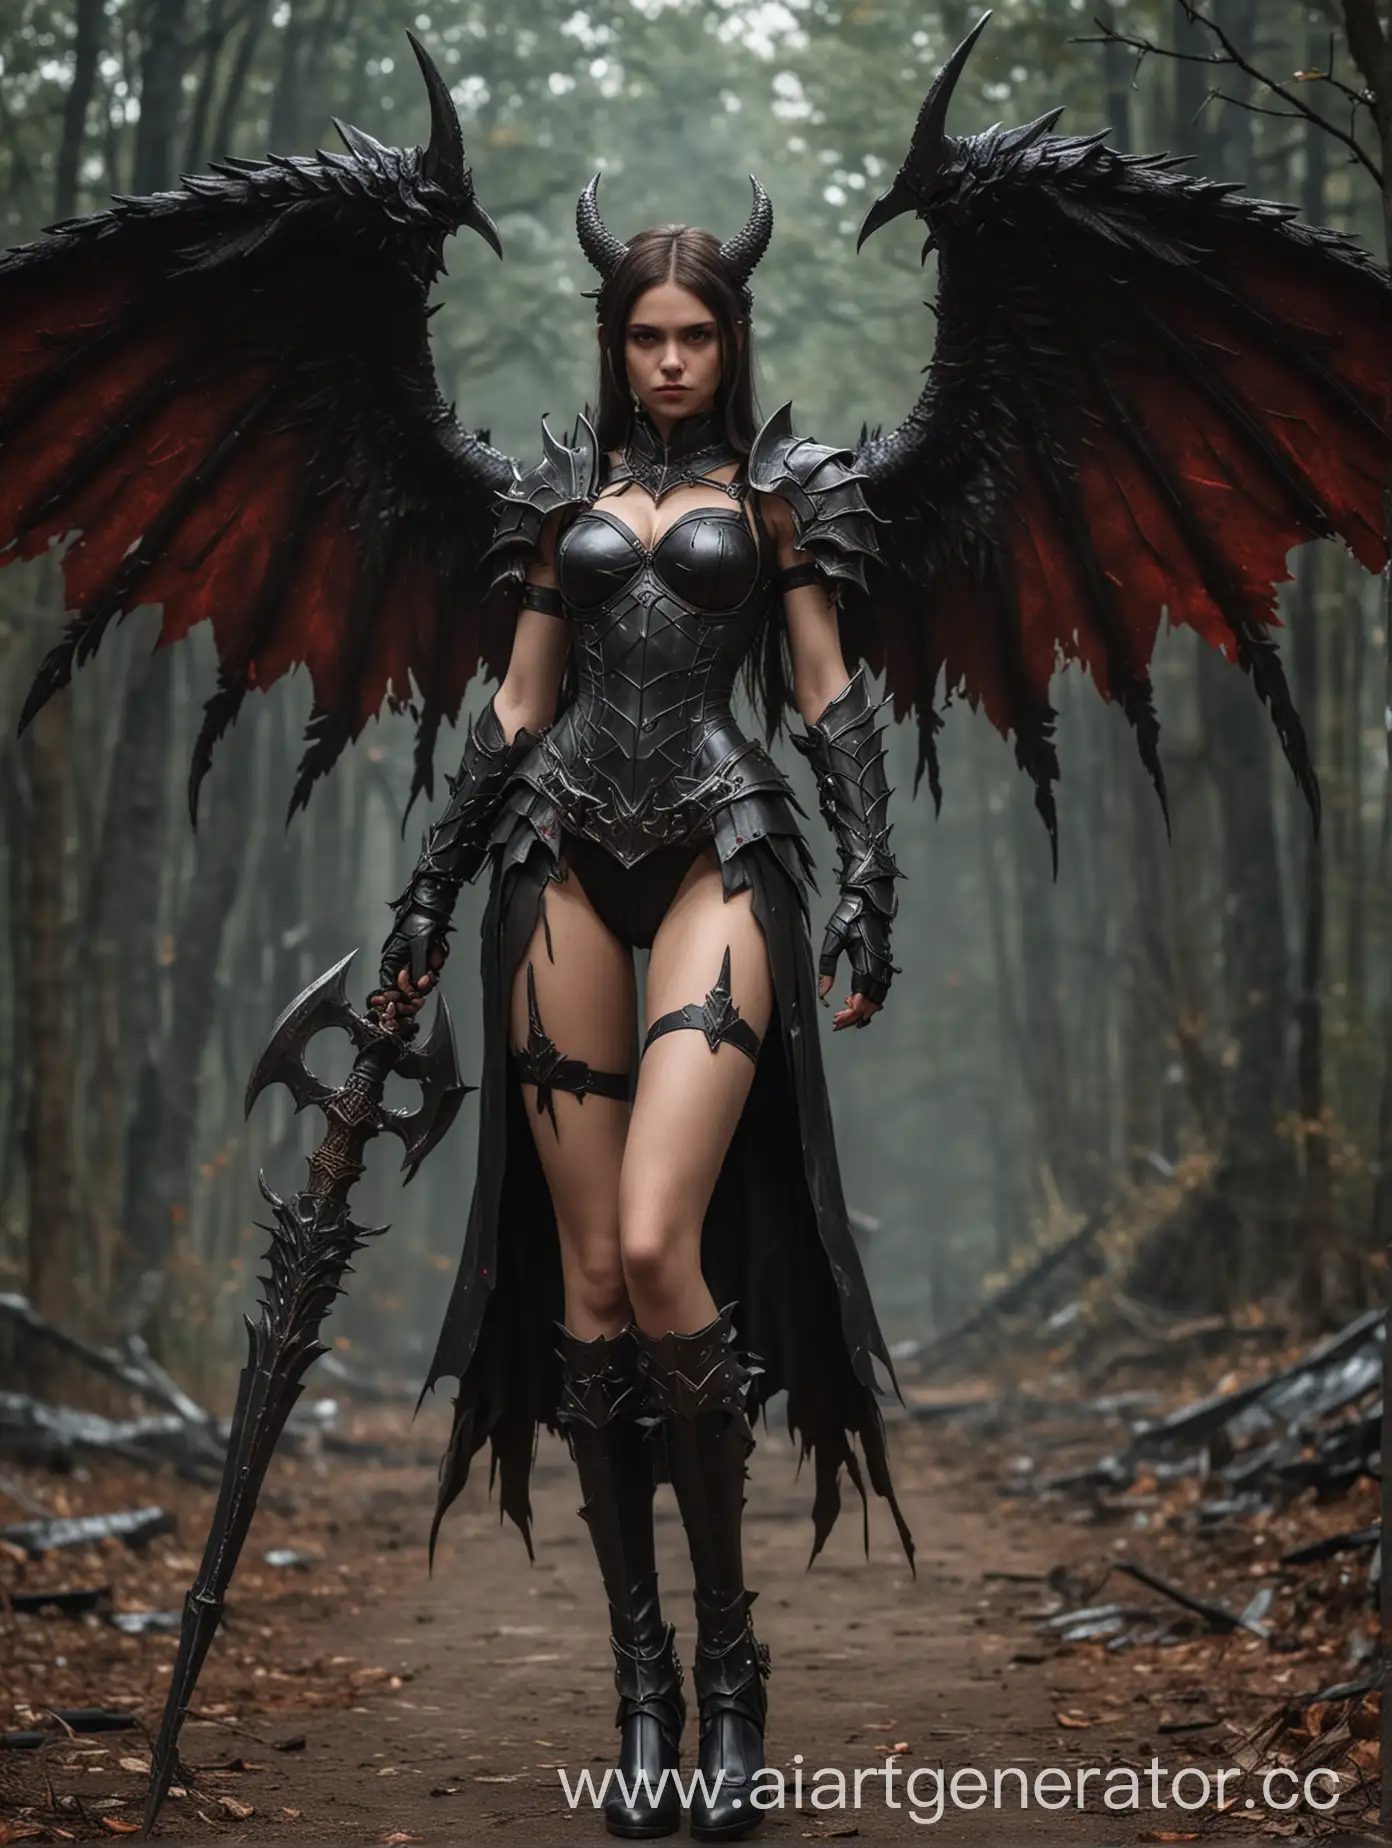 Powerful-Demon-Girl-in-Armor-wielding-a-Halberd